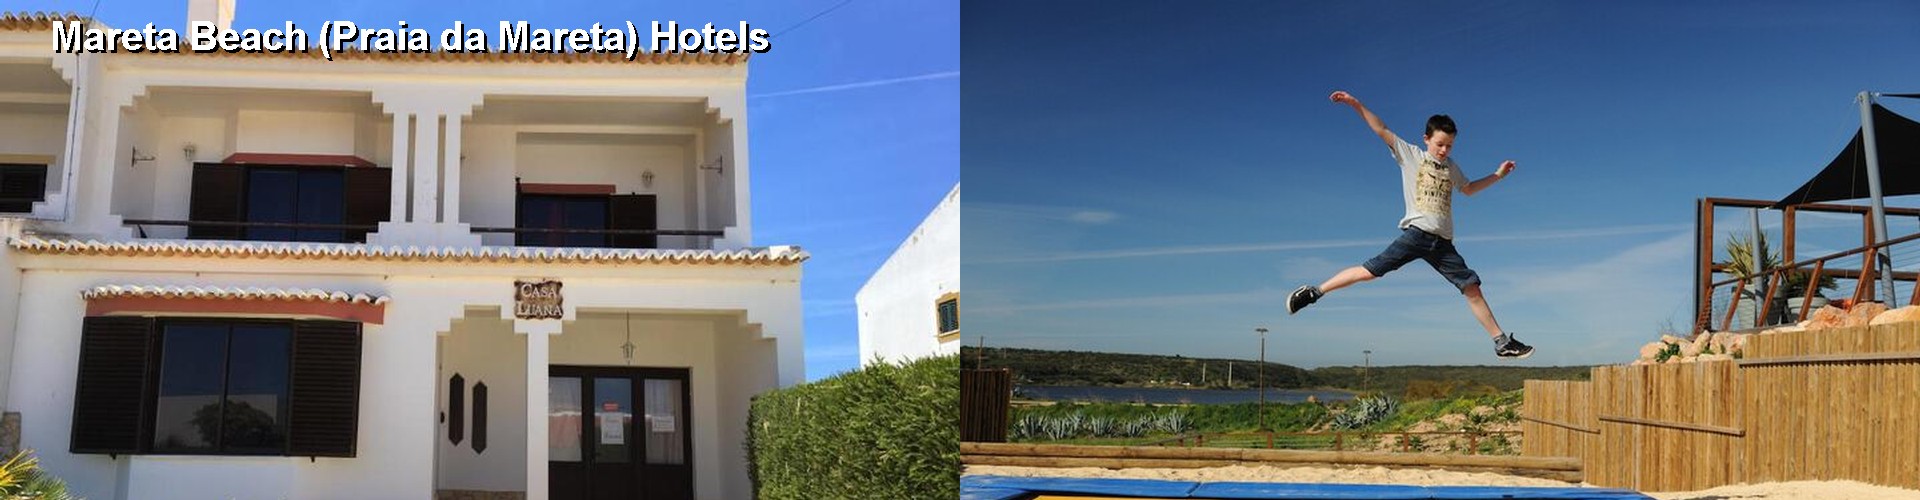 5 Best Hotels near Mareta Beach (Praia da Mareta)